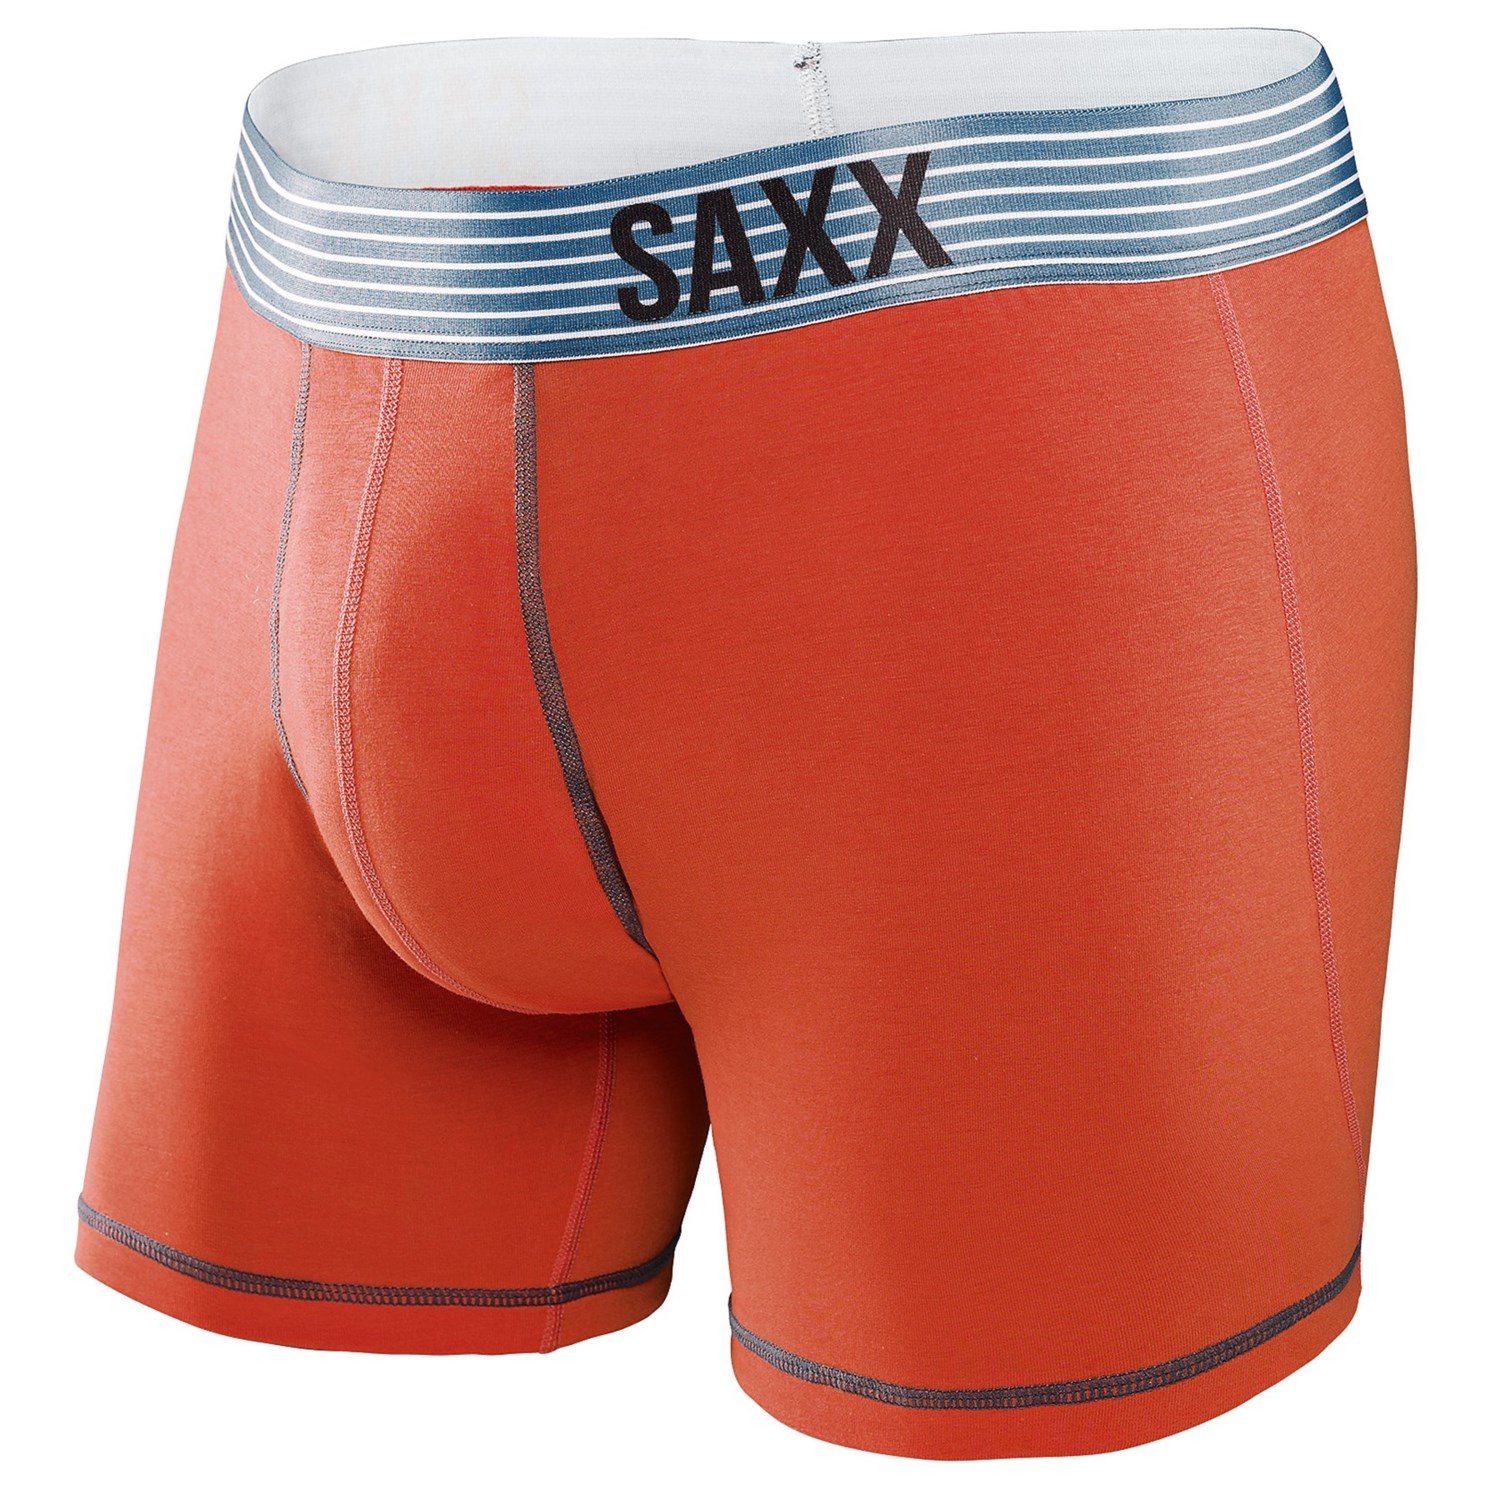 SAXX Underwear Fiesta Boxer Briefs (For Men) 9493R - Save 44%